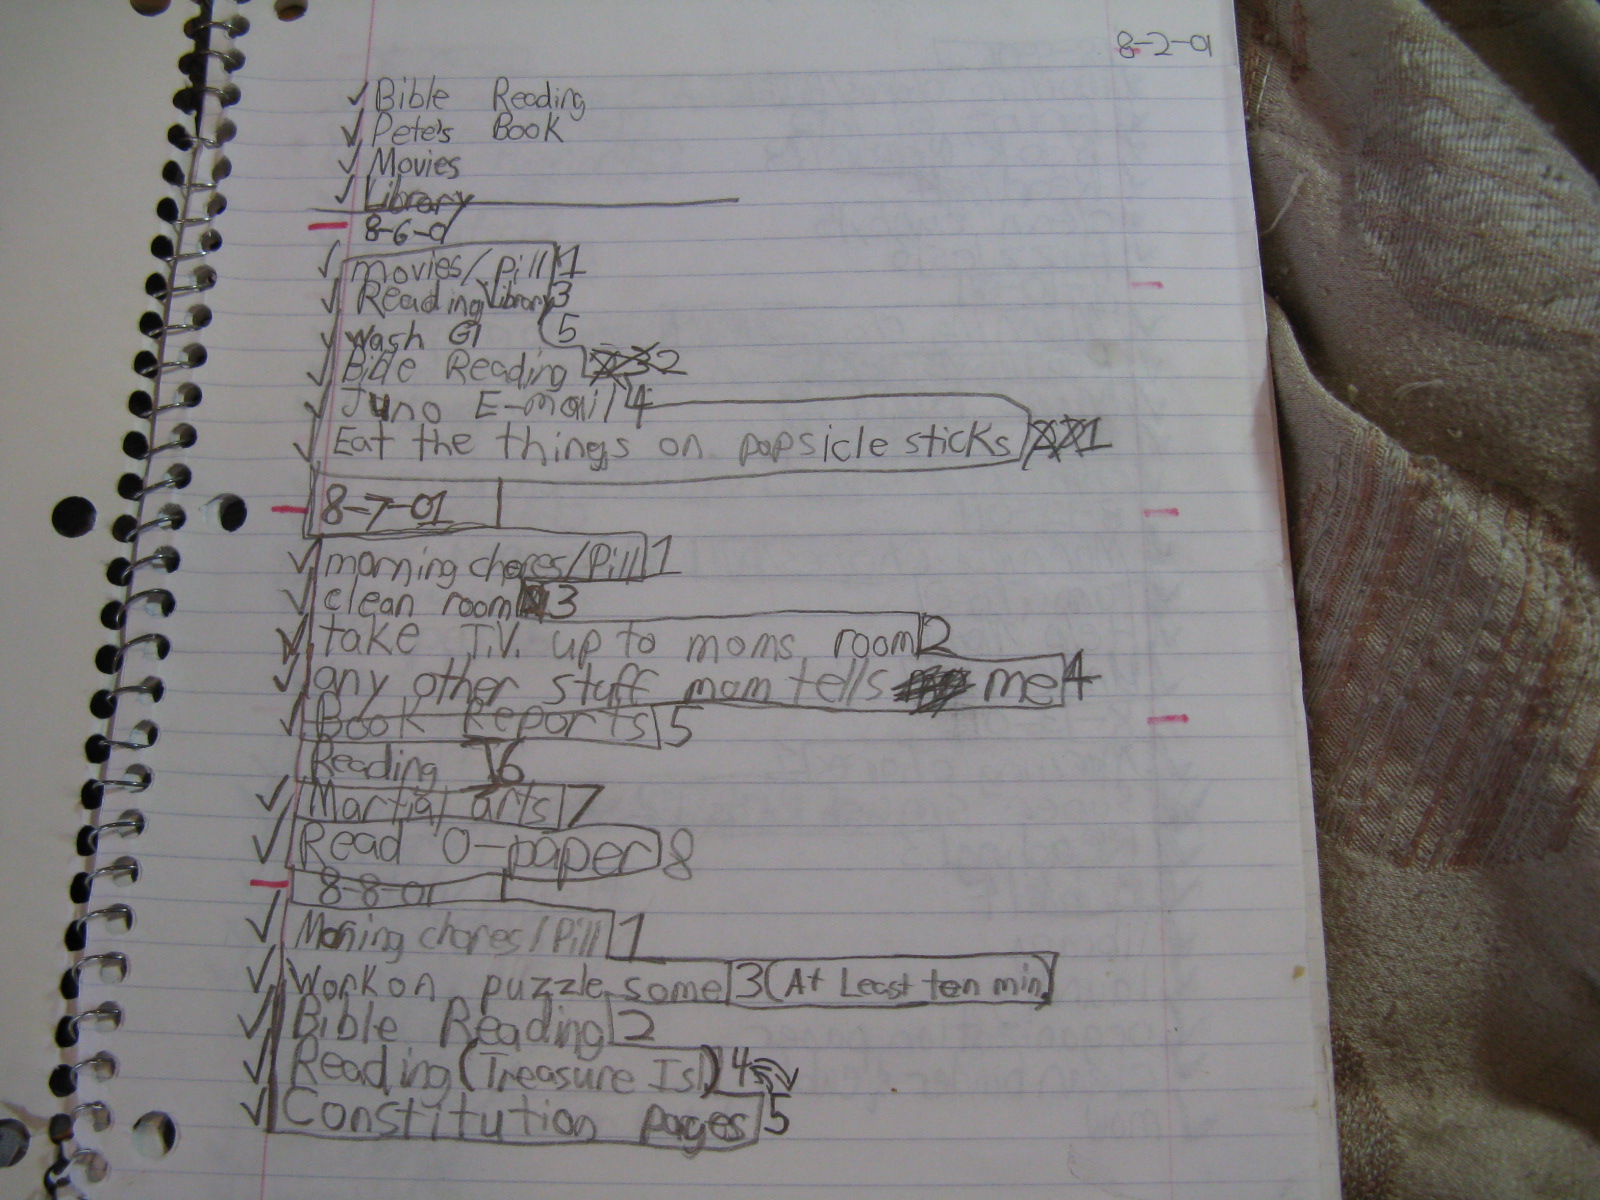 child's organized notebook schedule